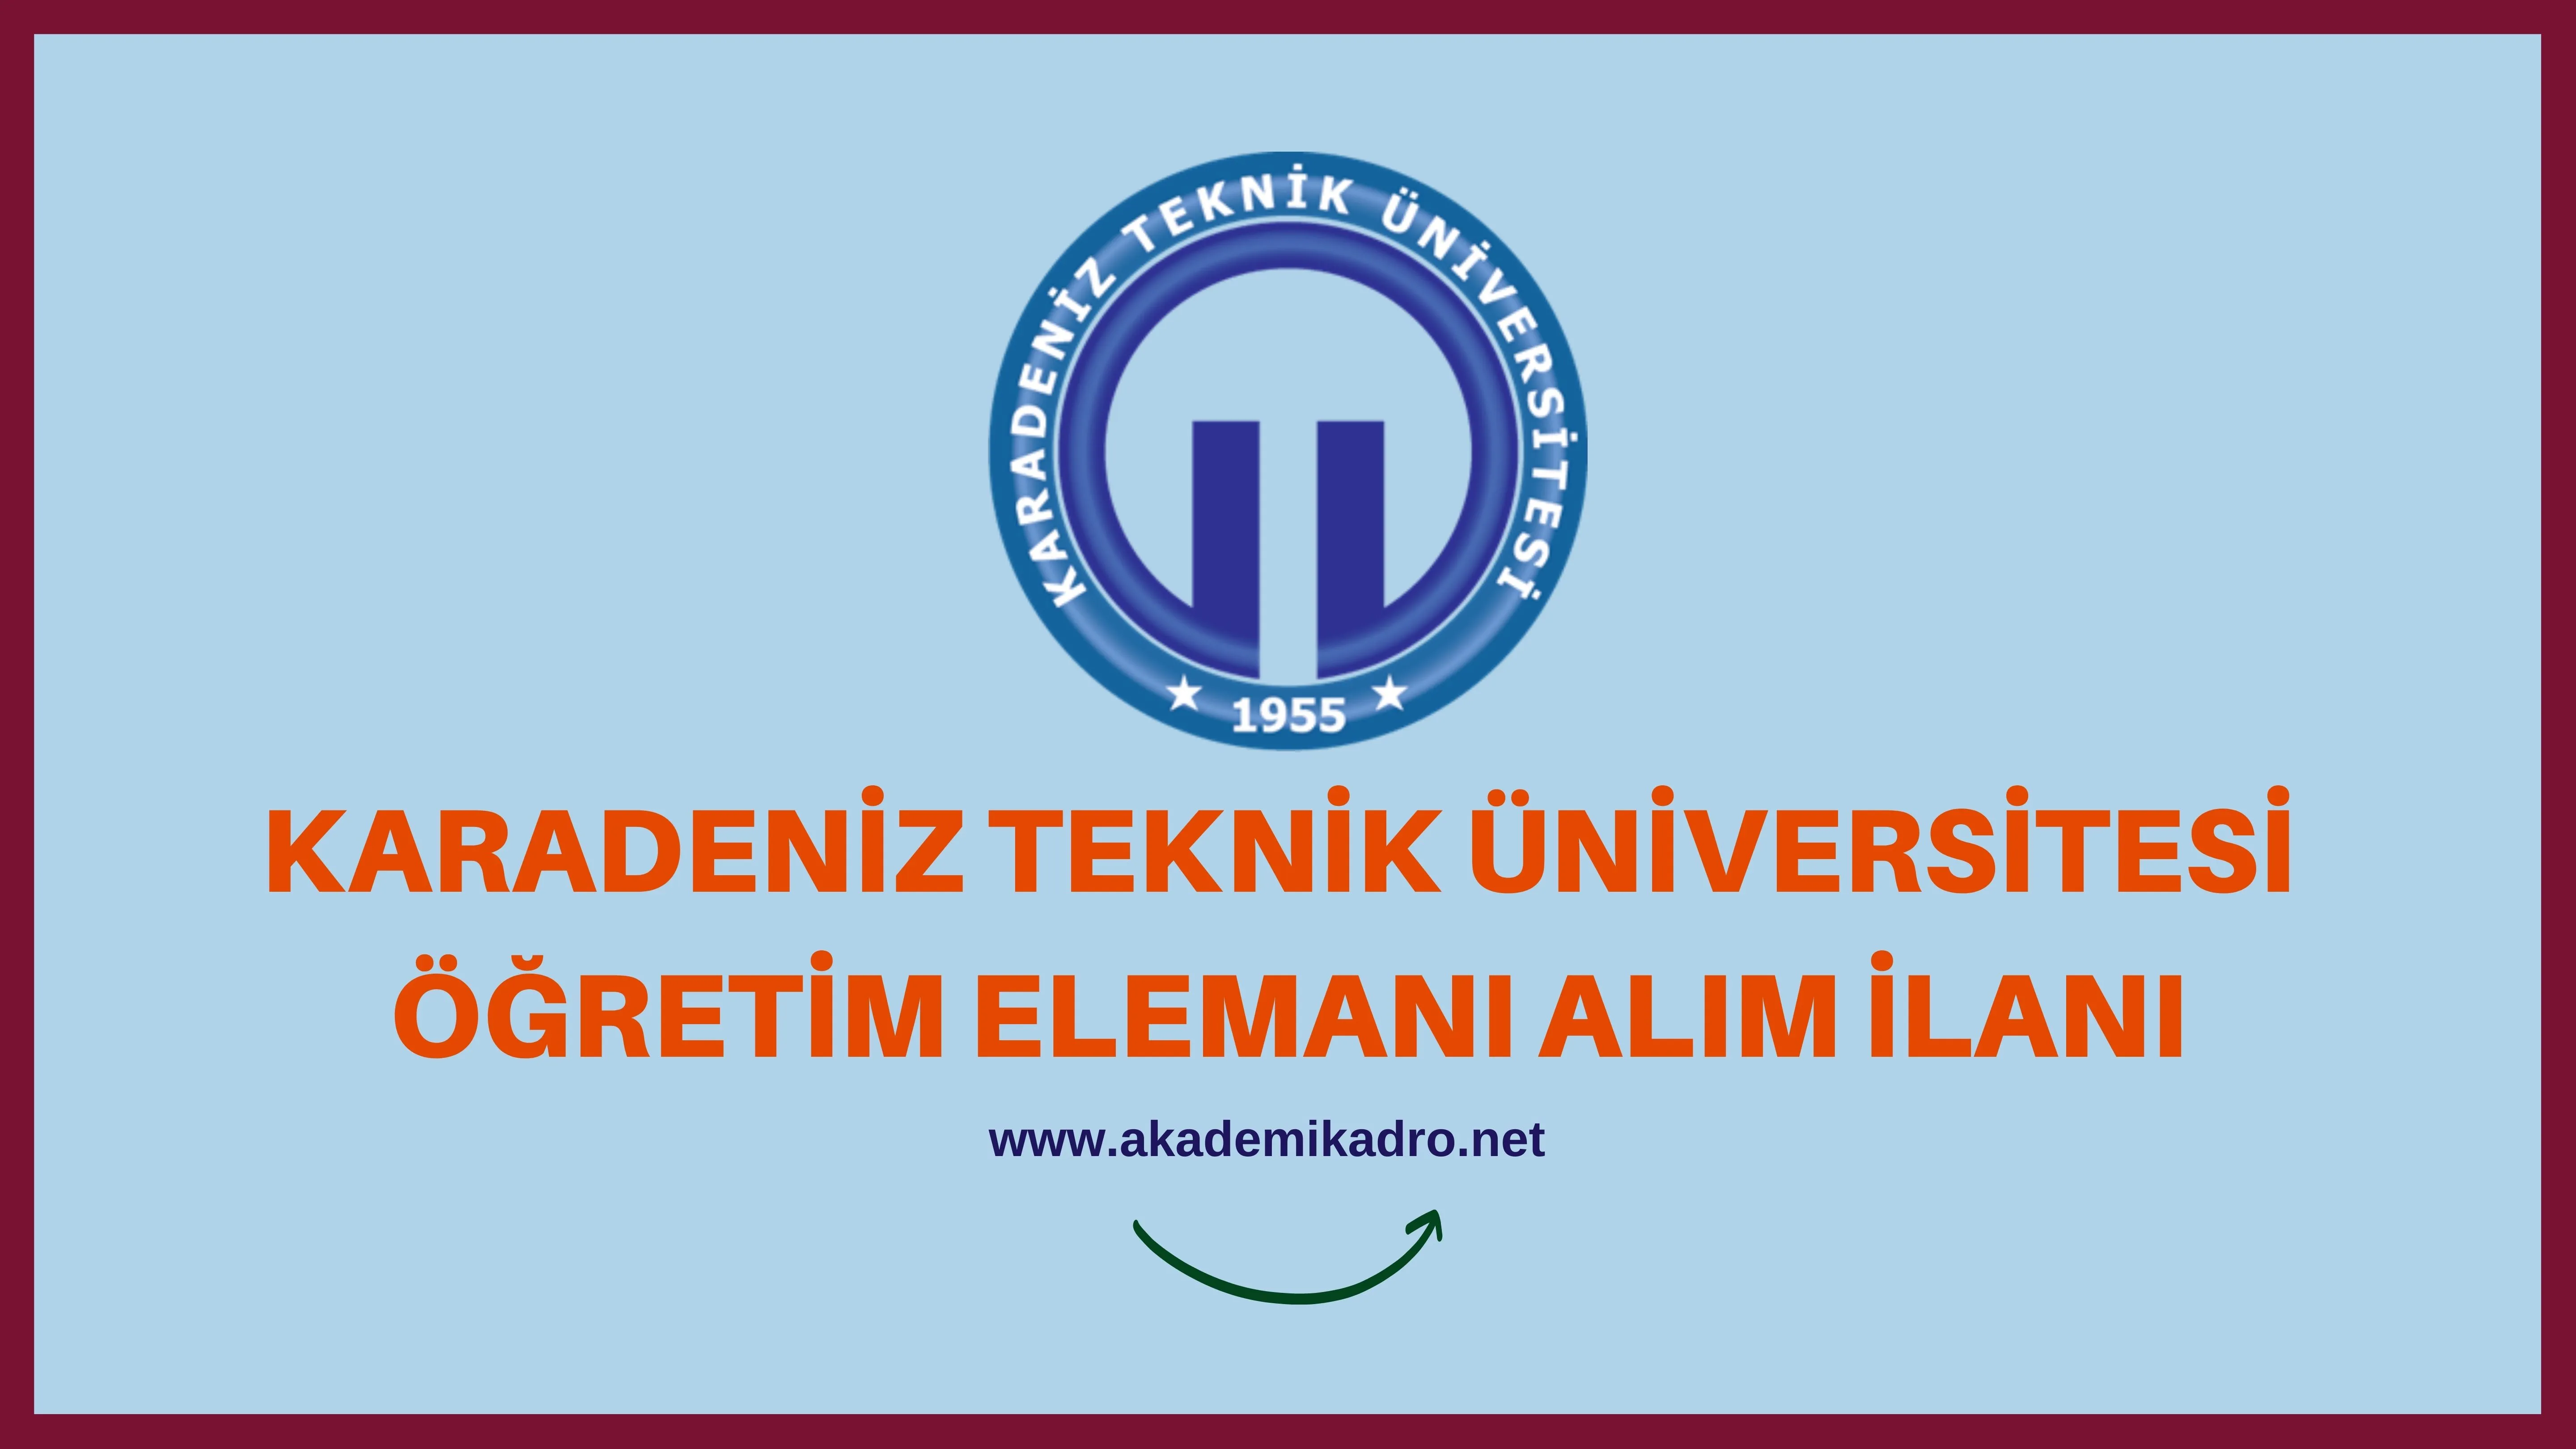 Karadeniz Teknik Üniversitesi Araştırma görevlisi, öğretim görevlisi ve öğretim üyesi olmak üzere 57 Öğretim elemanı alacak.  Son başvuru tarihi 29 Kasım 2023.